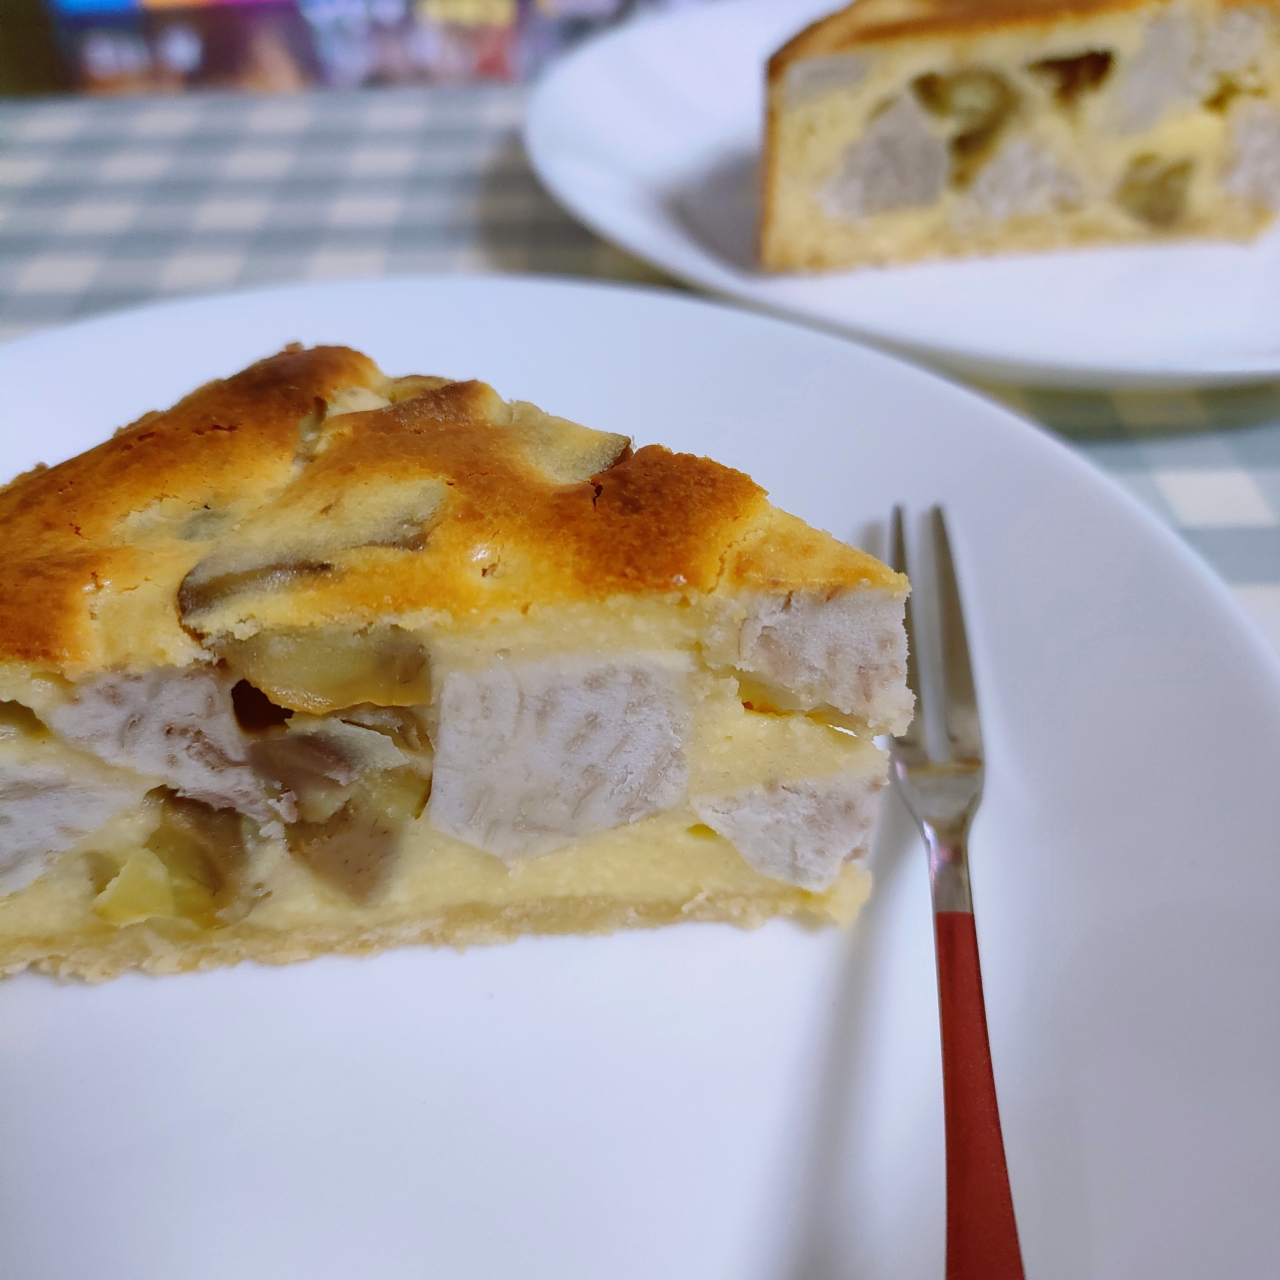 红薯板栗奶酪蛋糕—秋冬天的大满足